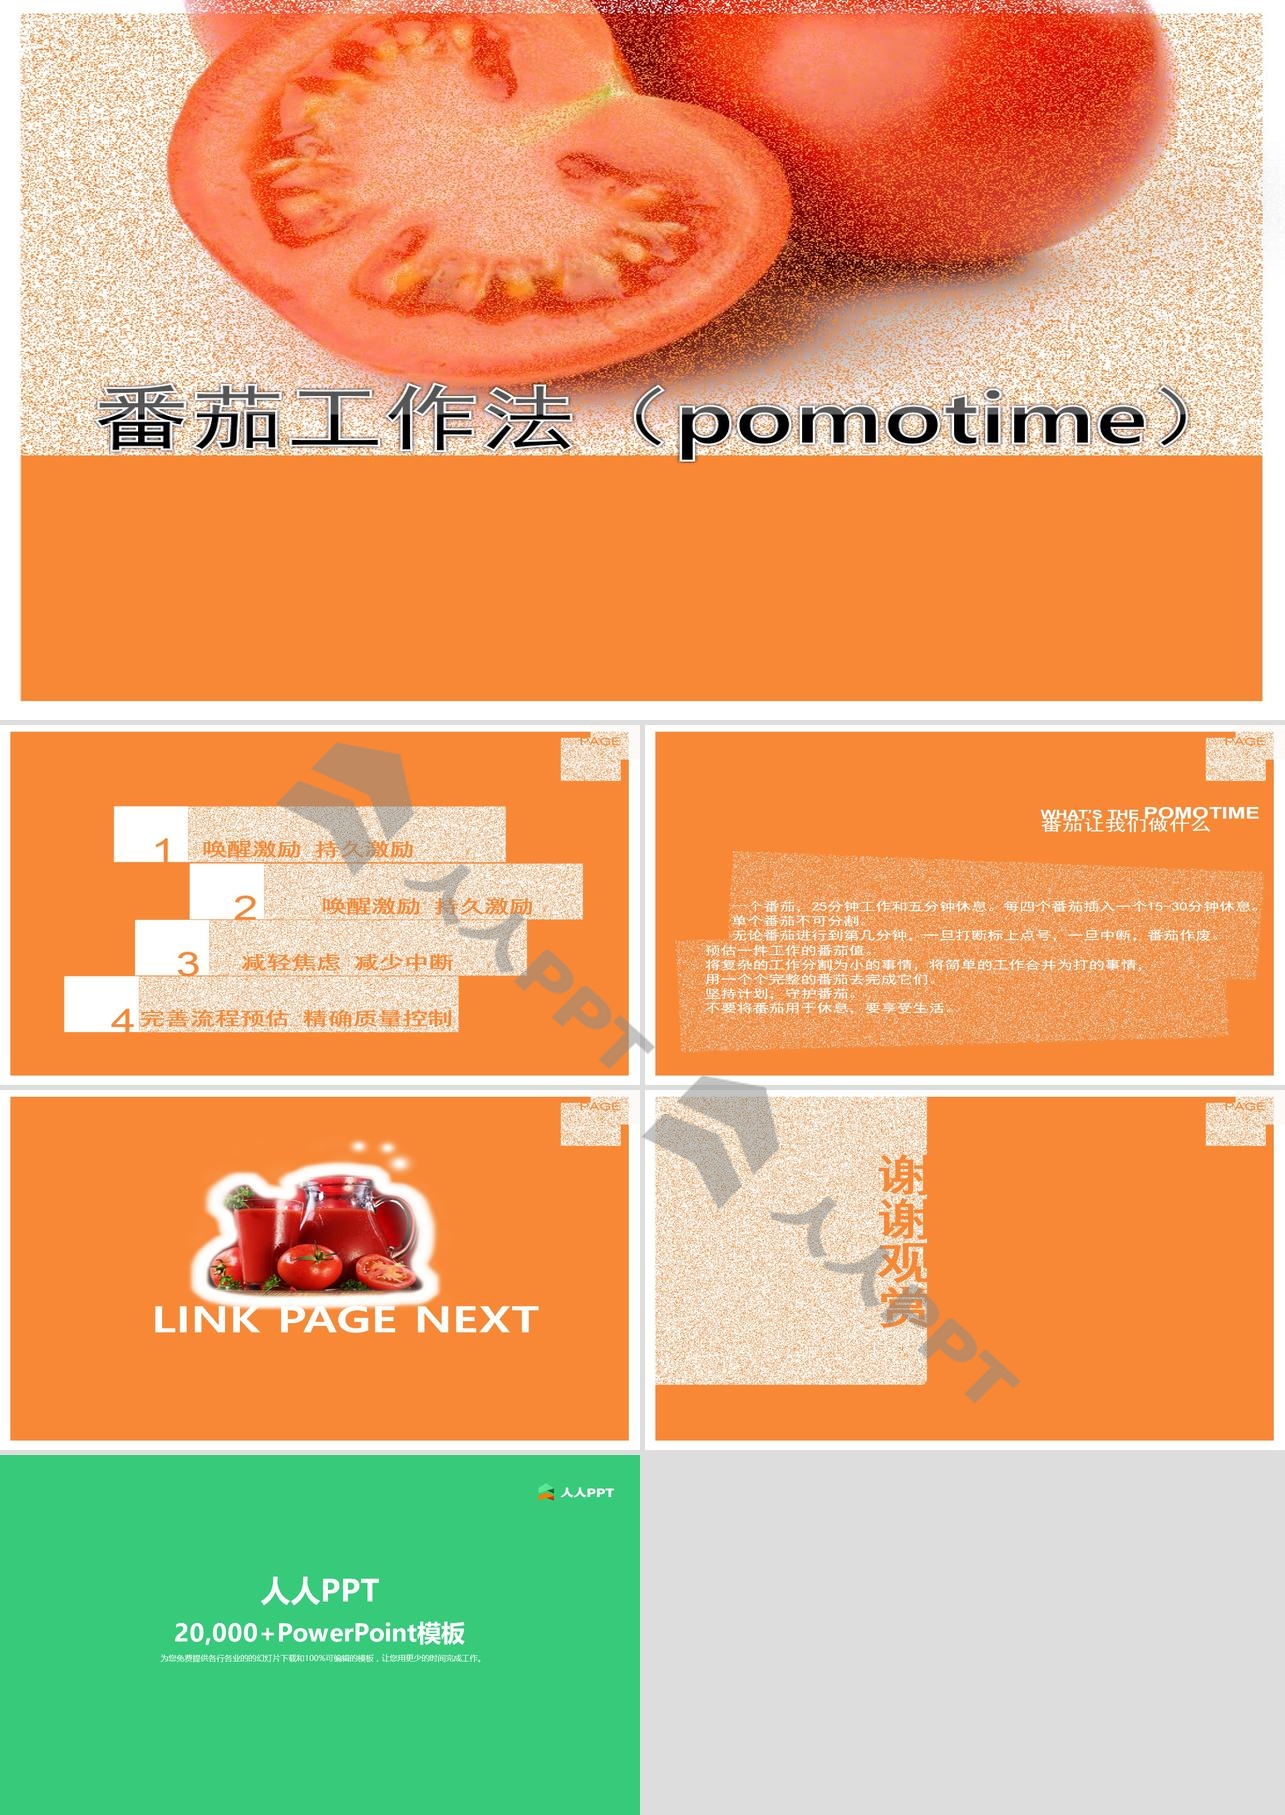 番茄工作法(pomotime)PowerPoint长图